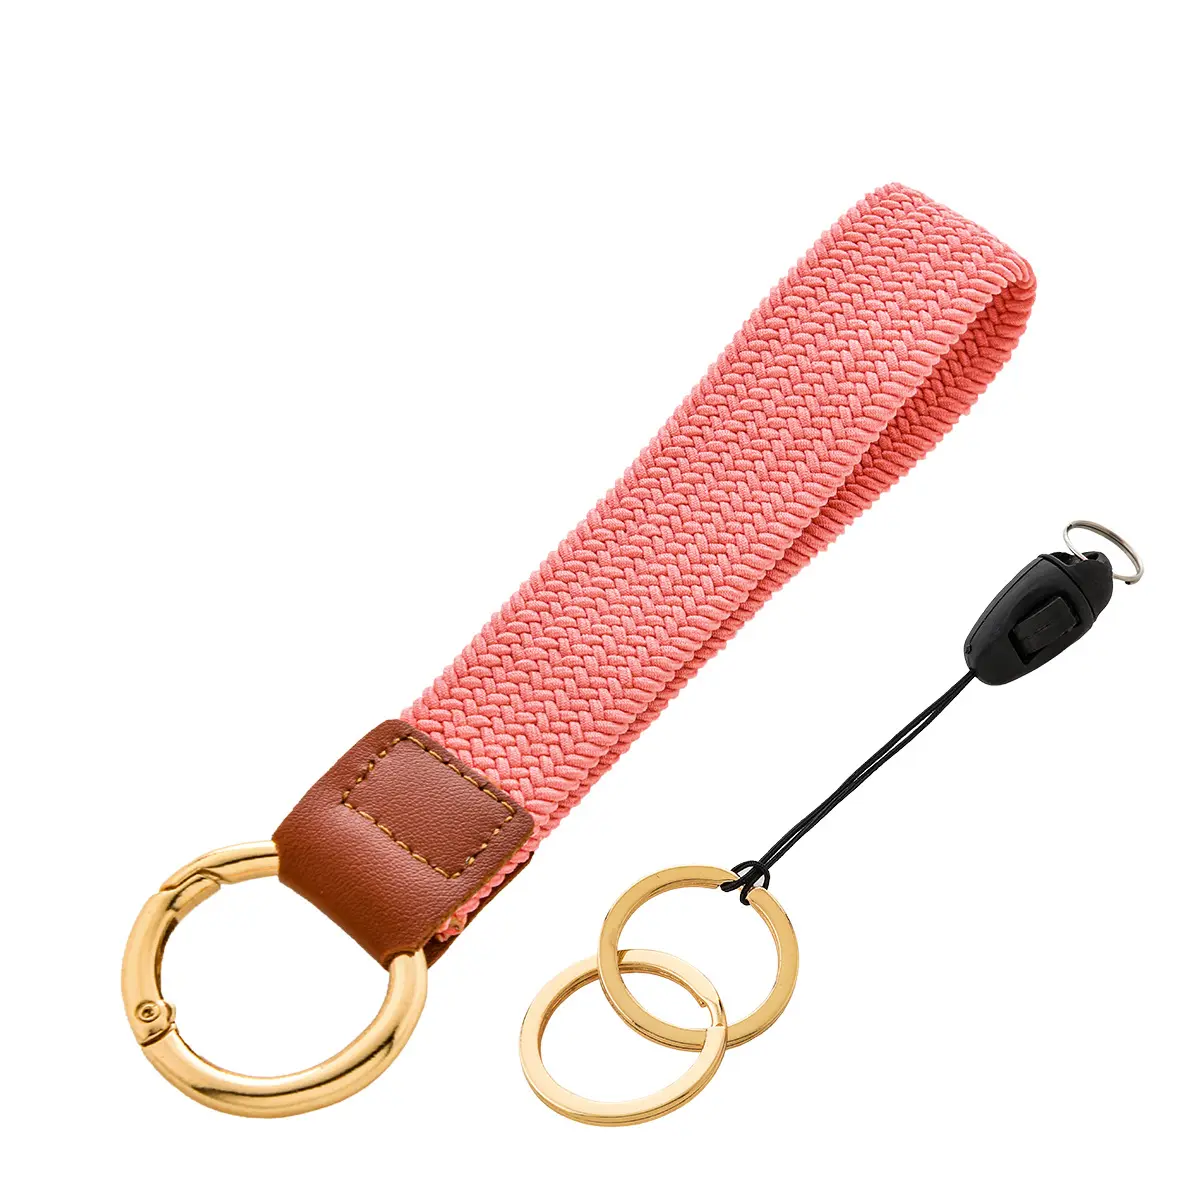 Logo personnalisé élastique tressé bracelet porte-clés femmes extensible poignet porte-clés lanière pour appareil photo étui de téléphone portefeuille carte d'identité badges